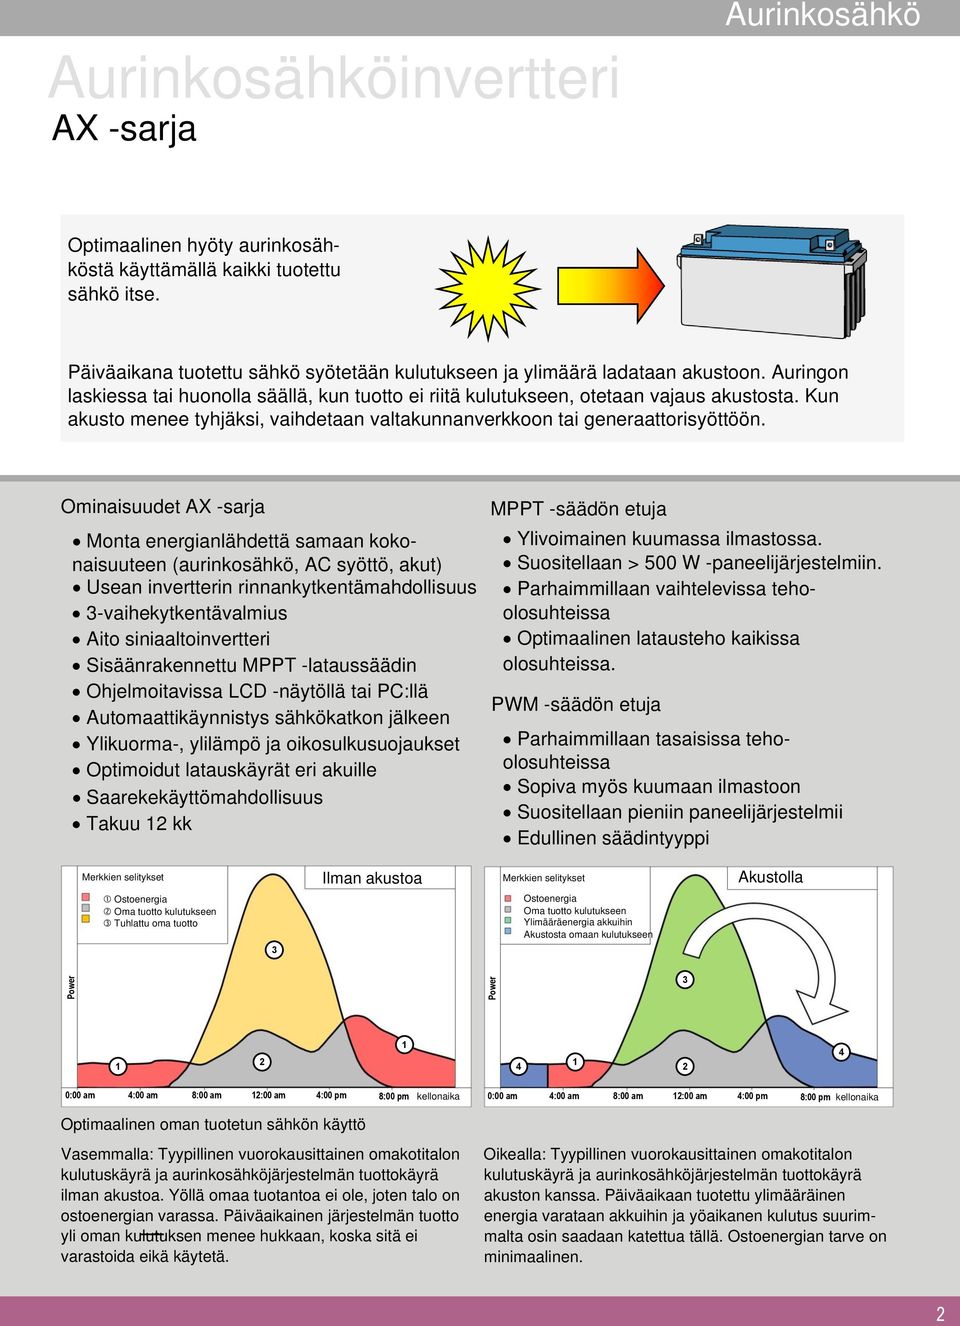 Ominaisuudet AX -sarja Monta energianlähdettä samaan kokonaisuuteen (aurinkosähkö, AC syöttö, akut) Usean invertterin rinnankytkentämahdollisuus -vaihekytkentävalmius Aito siniaaltoinvertteri